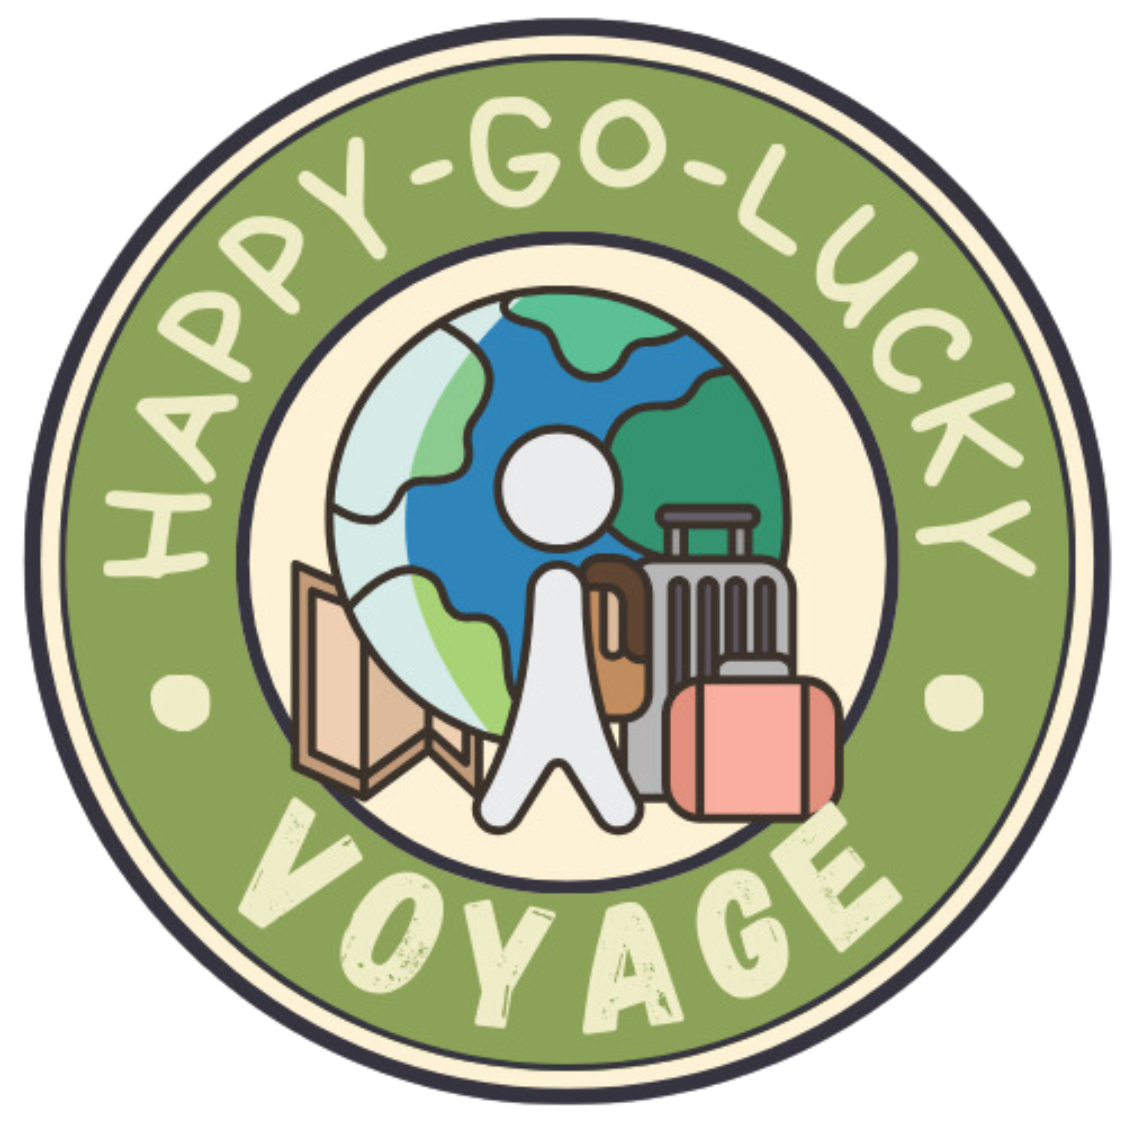 Happy-go-lucky Voyage